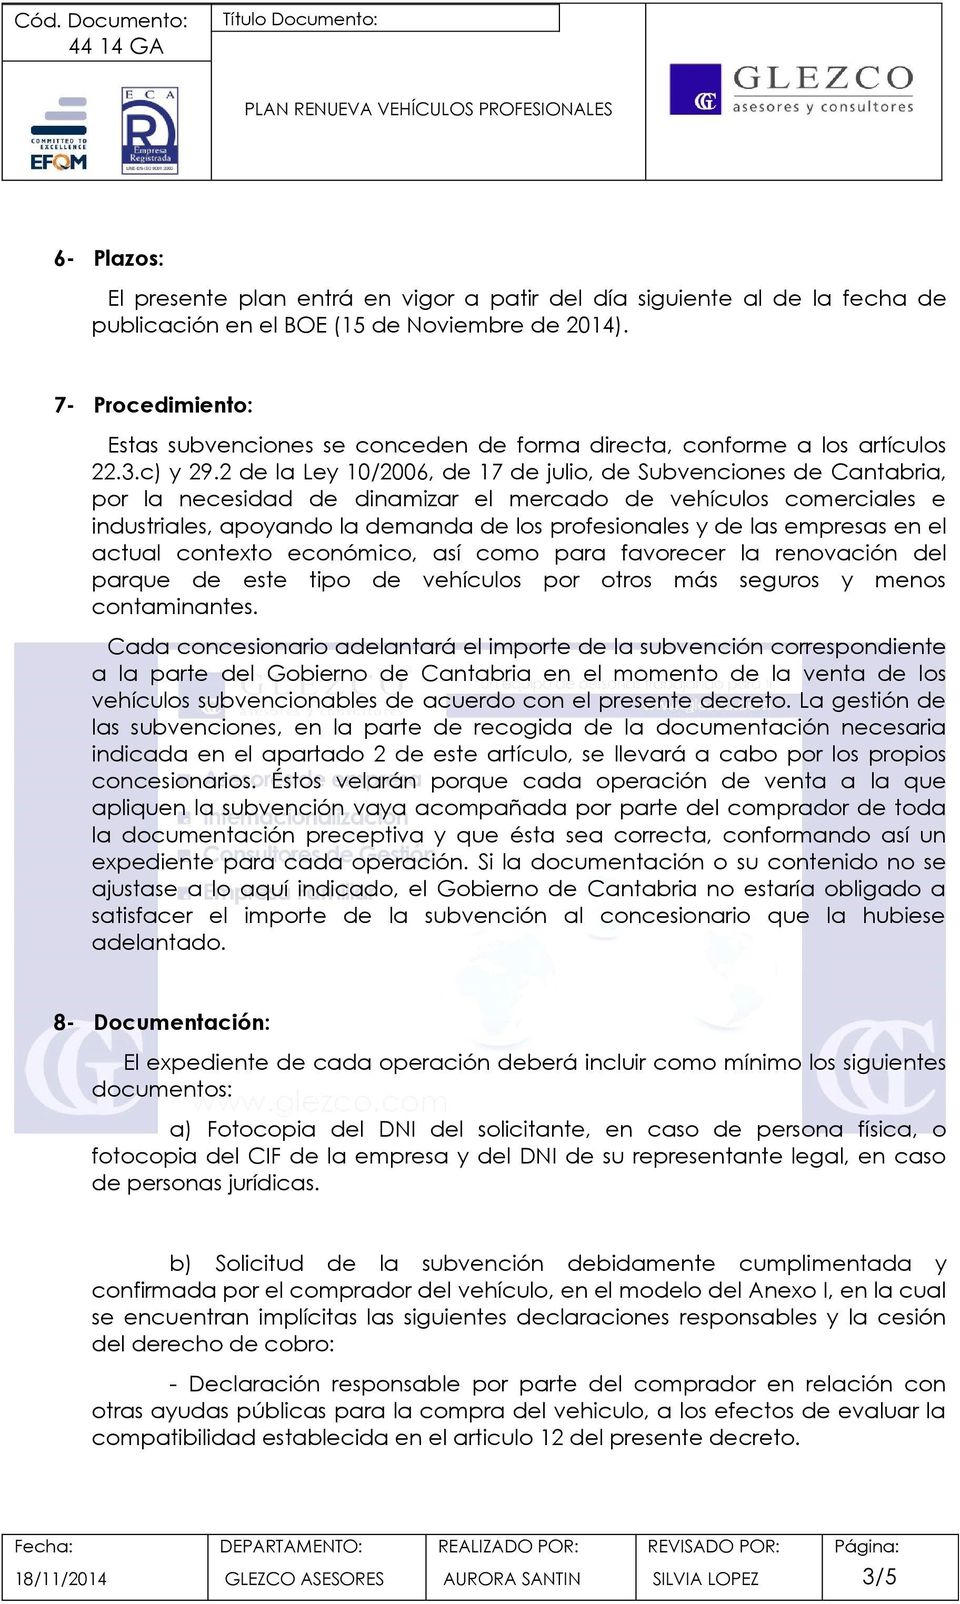 2 de la Ley 10/2006, de 17 de julio, de Subvenciones de Cantabria, por la necesidad de dinamizar el mercado de vehículos comerciales e industriales, apoyando la demanda de los profesionales y de las